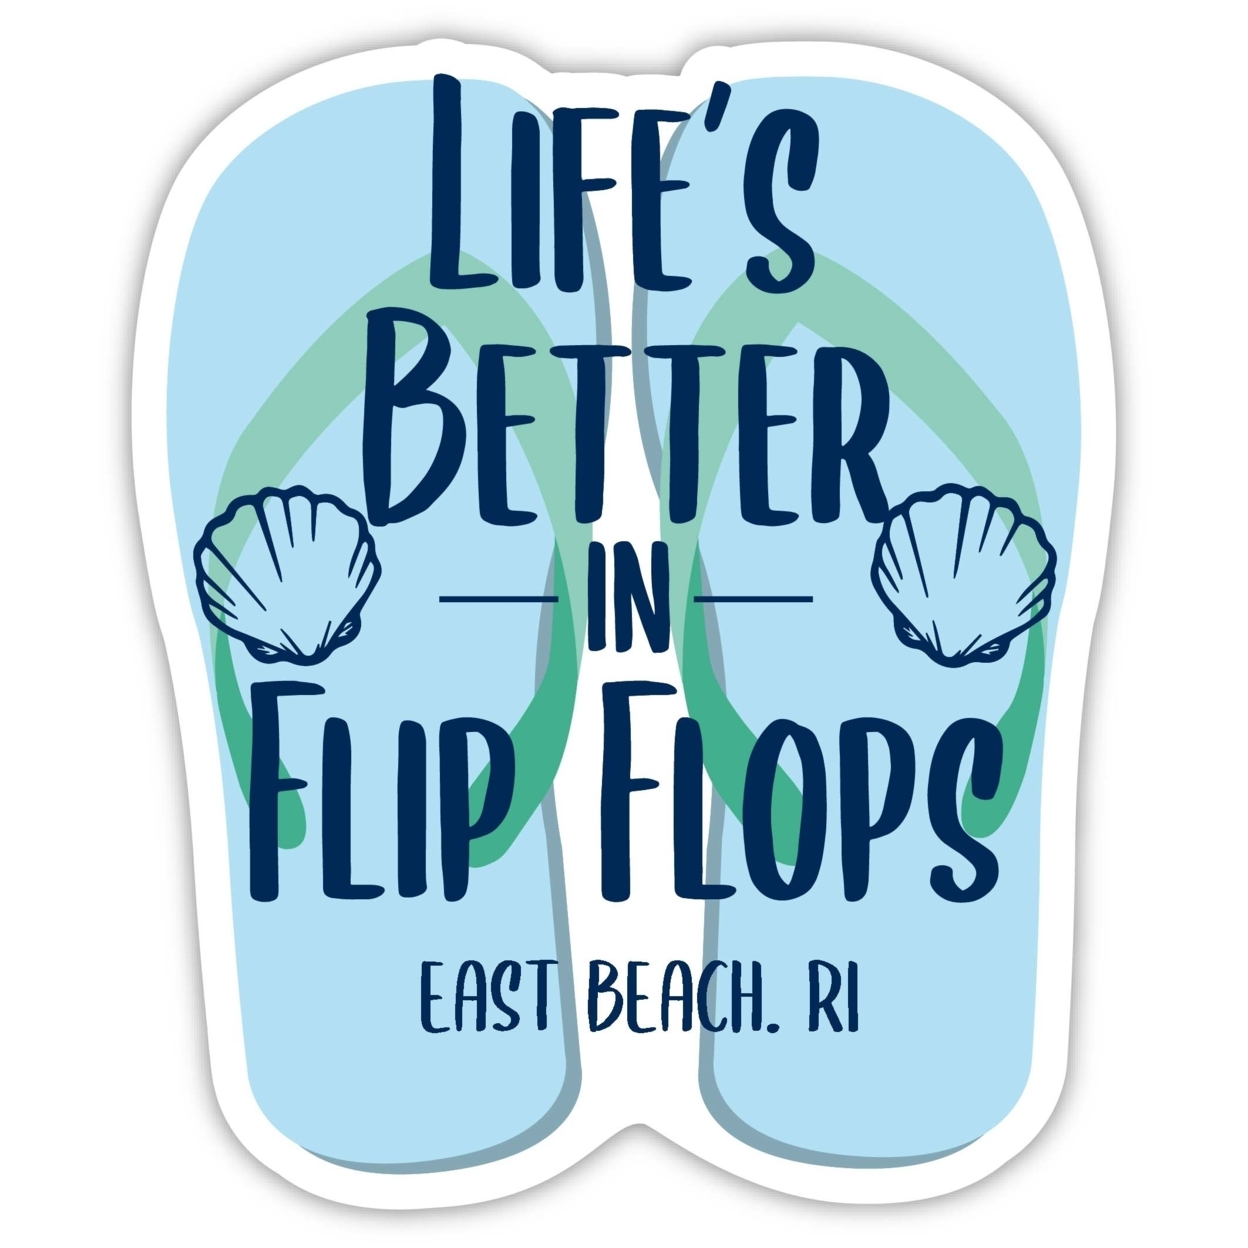 East Beach Rhode Island Souvenir 4 Inch Vinyl Decal Sticker Flip Flop Design